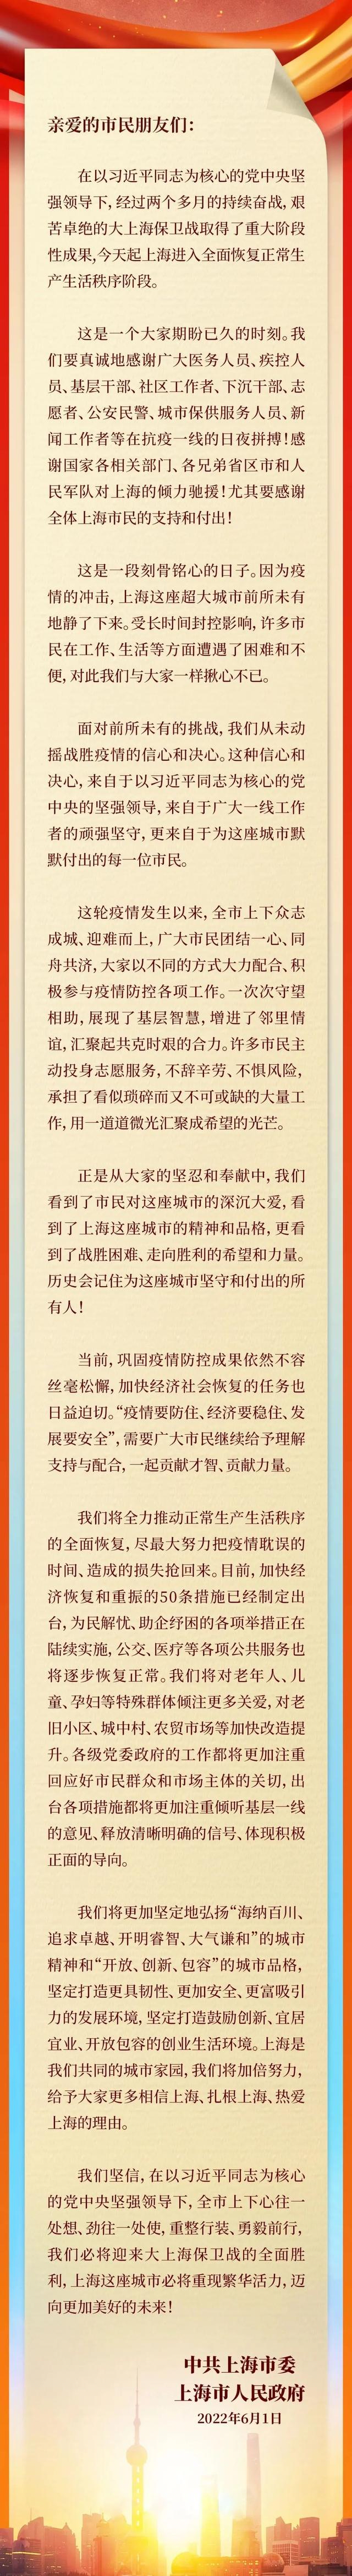 中共上海市委上海市人民政府致全市人民的感谢信,太爱了